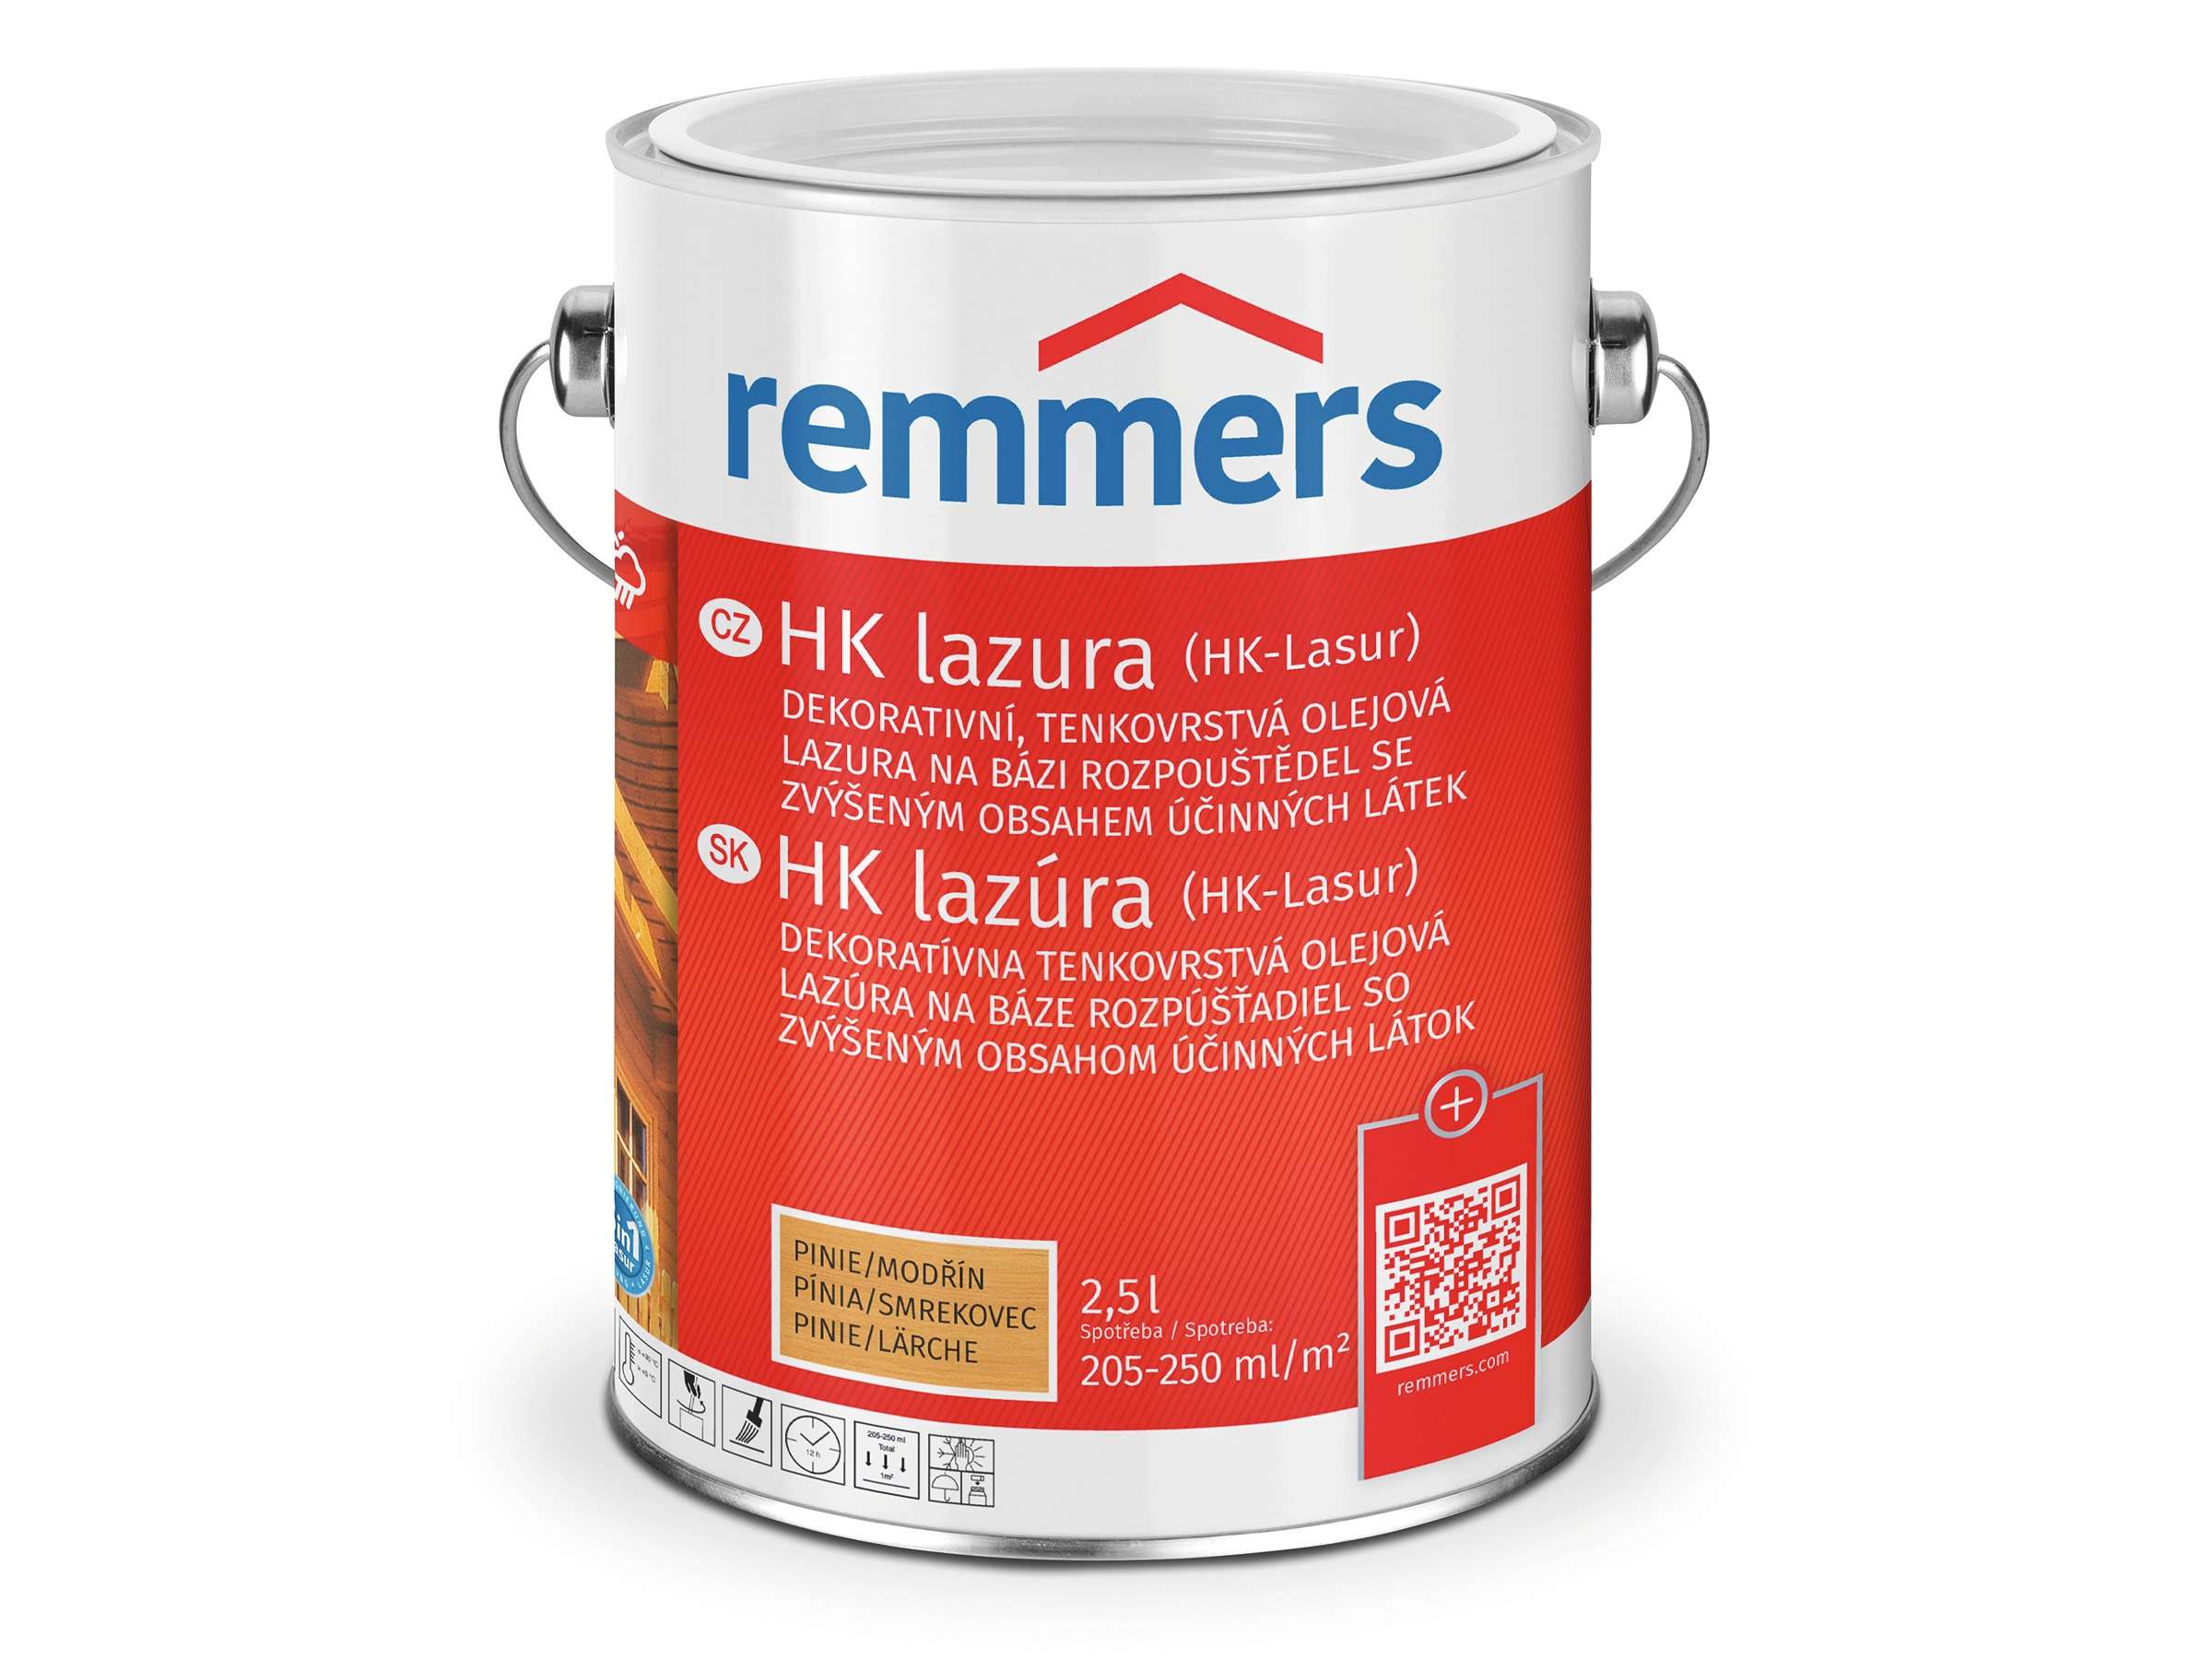 Remmers HK lazura * tenkovrstvá olejová lazura 1